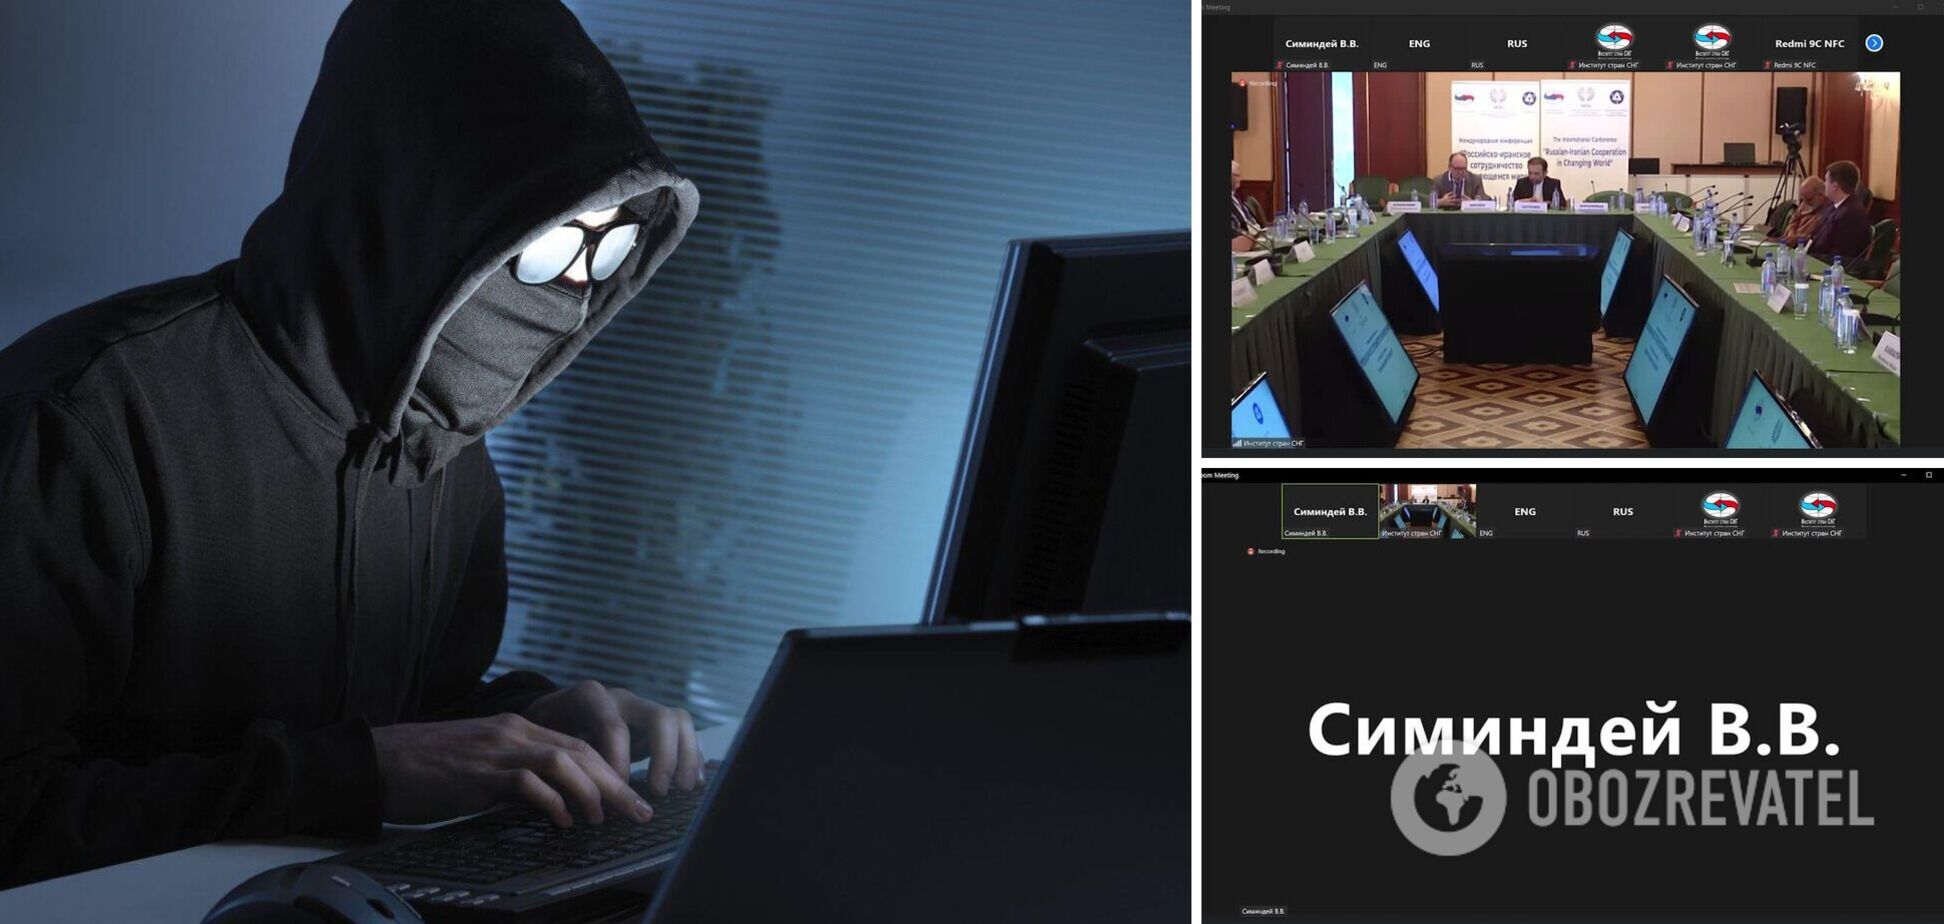 'Пишите завещания': украинские хакеры устроили 'разнос' на закрытой конференции РФ и Ирана. Видео